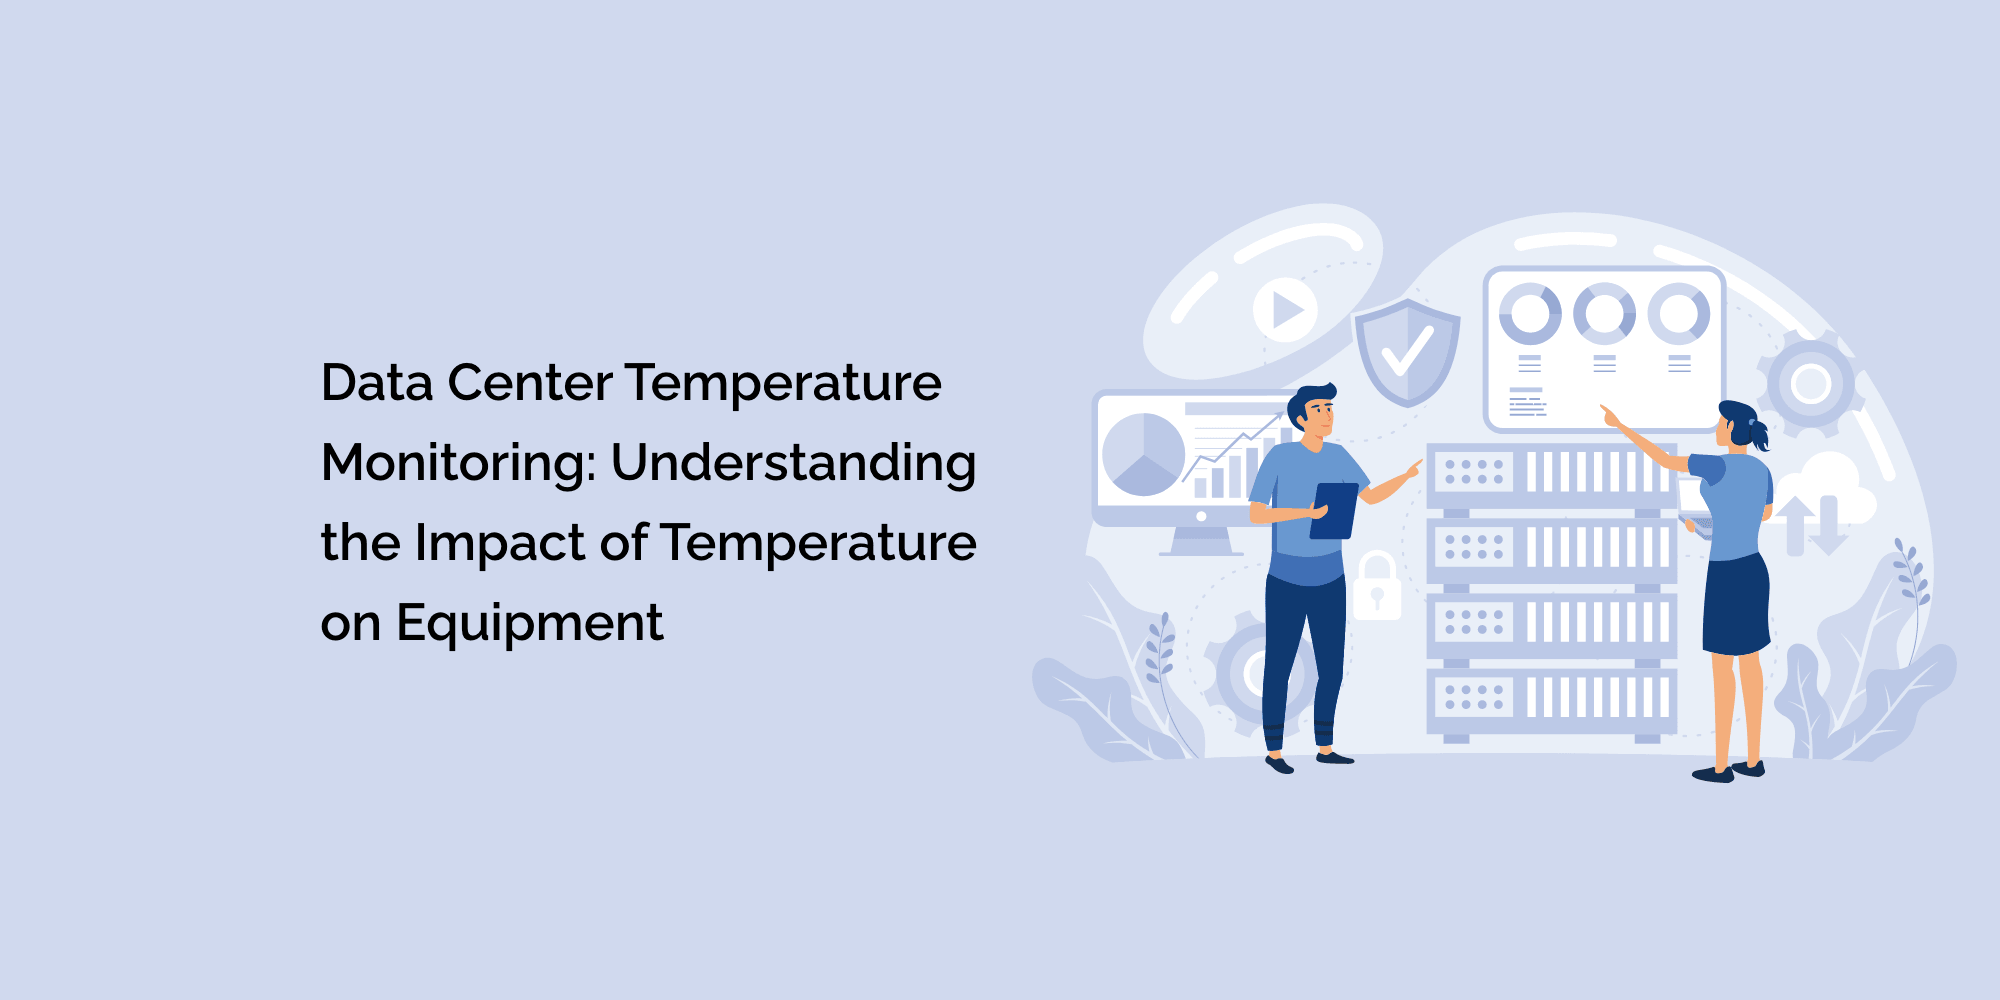 Data Center Temperature Monitoring: Understanding the Impact of Temperature on Equipment